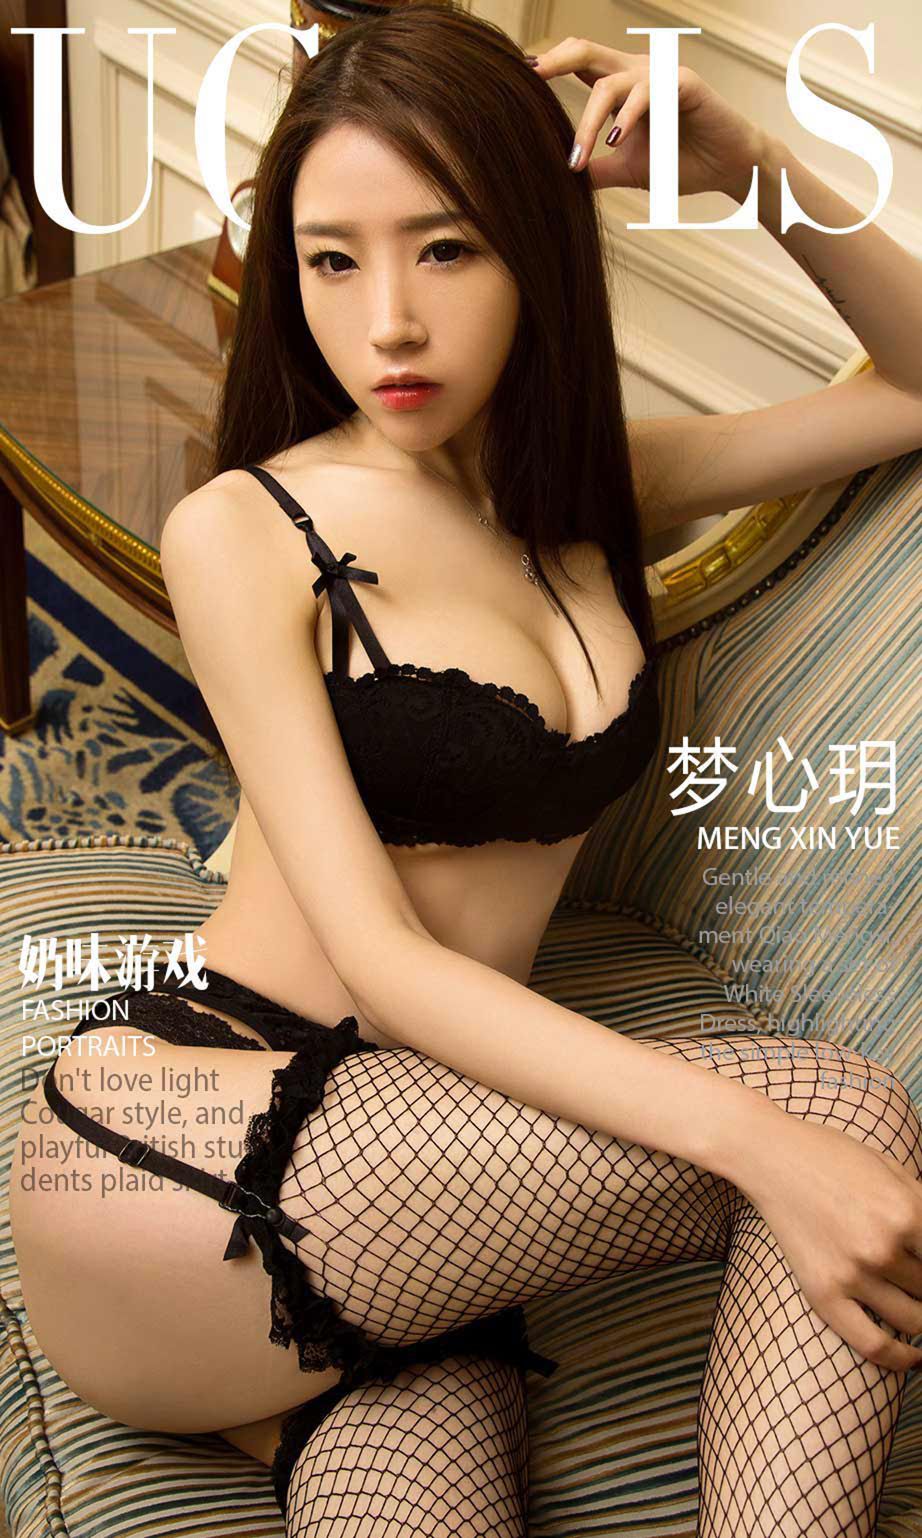 Ugirls App Vol. 993 Meng Xin Yue